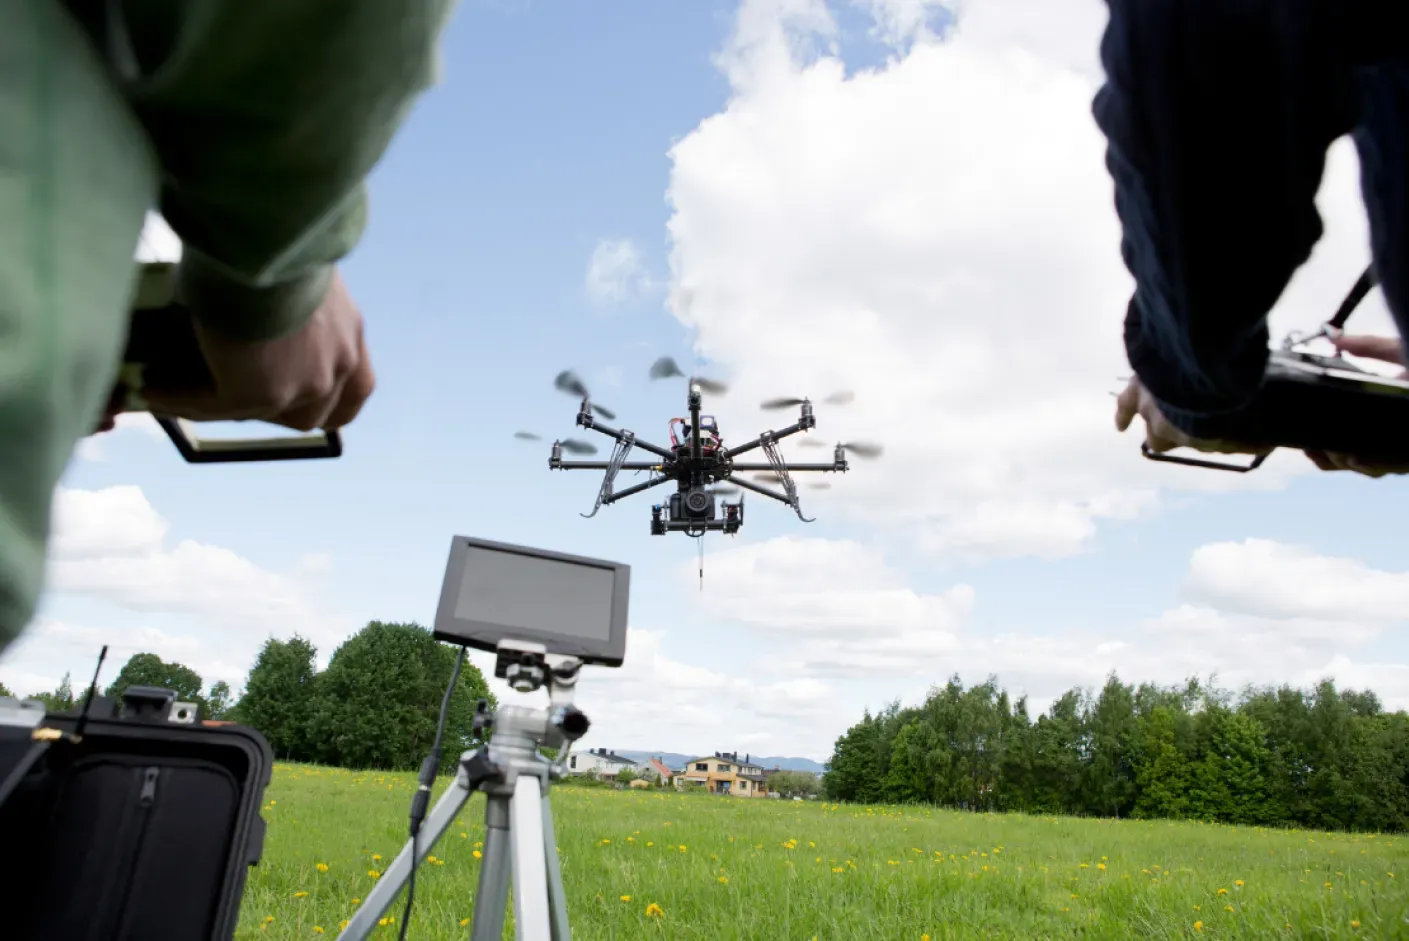 Operador de drone profissional com Licença Drones Sts 02 BVLOS em ação